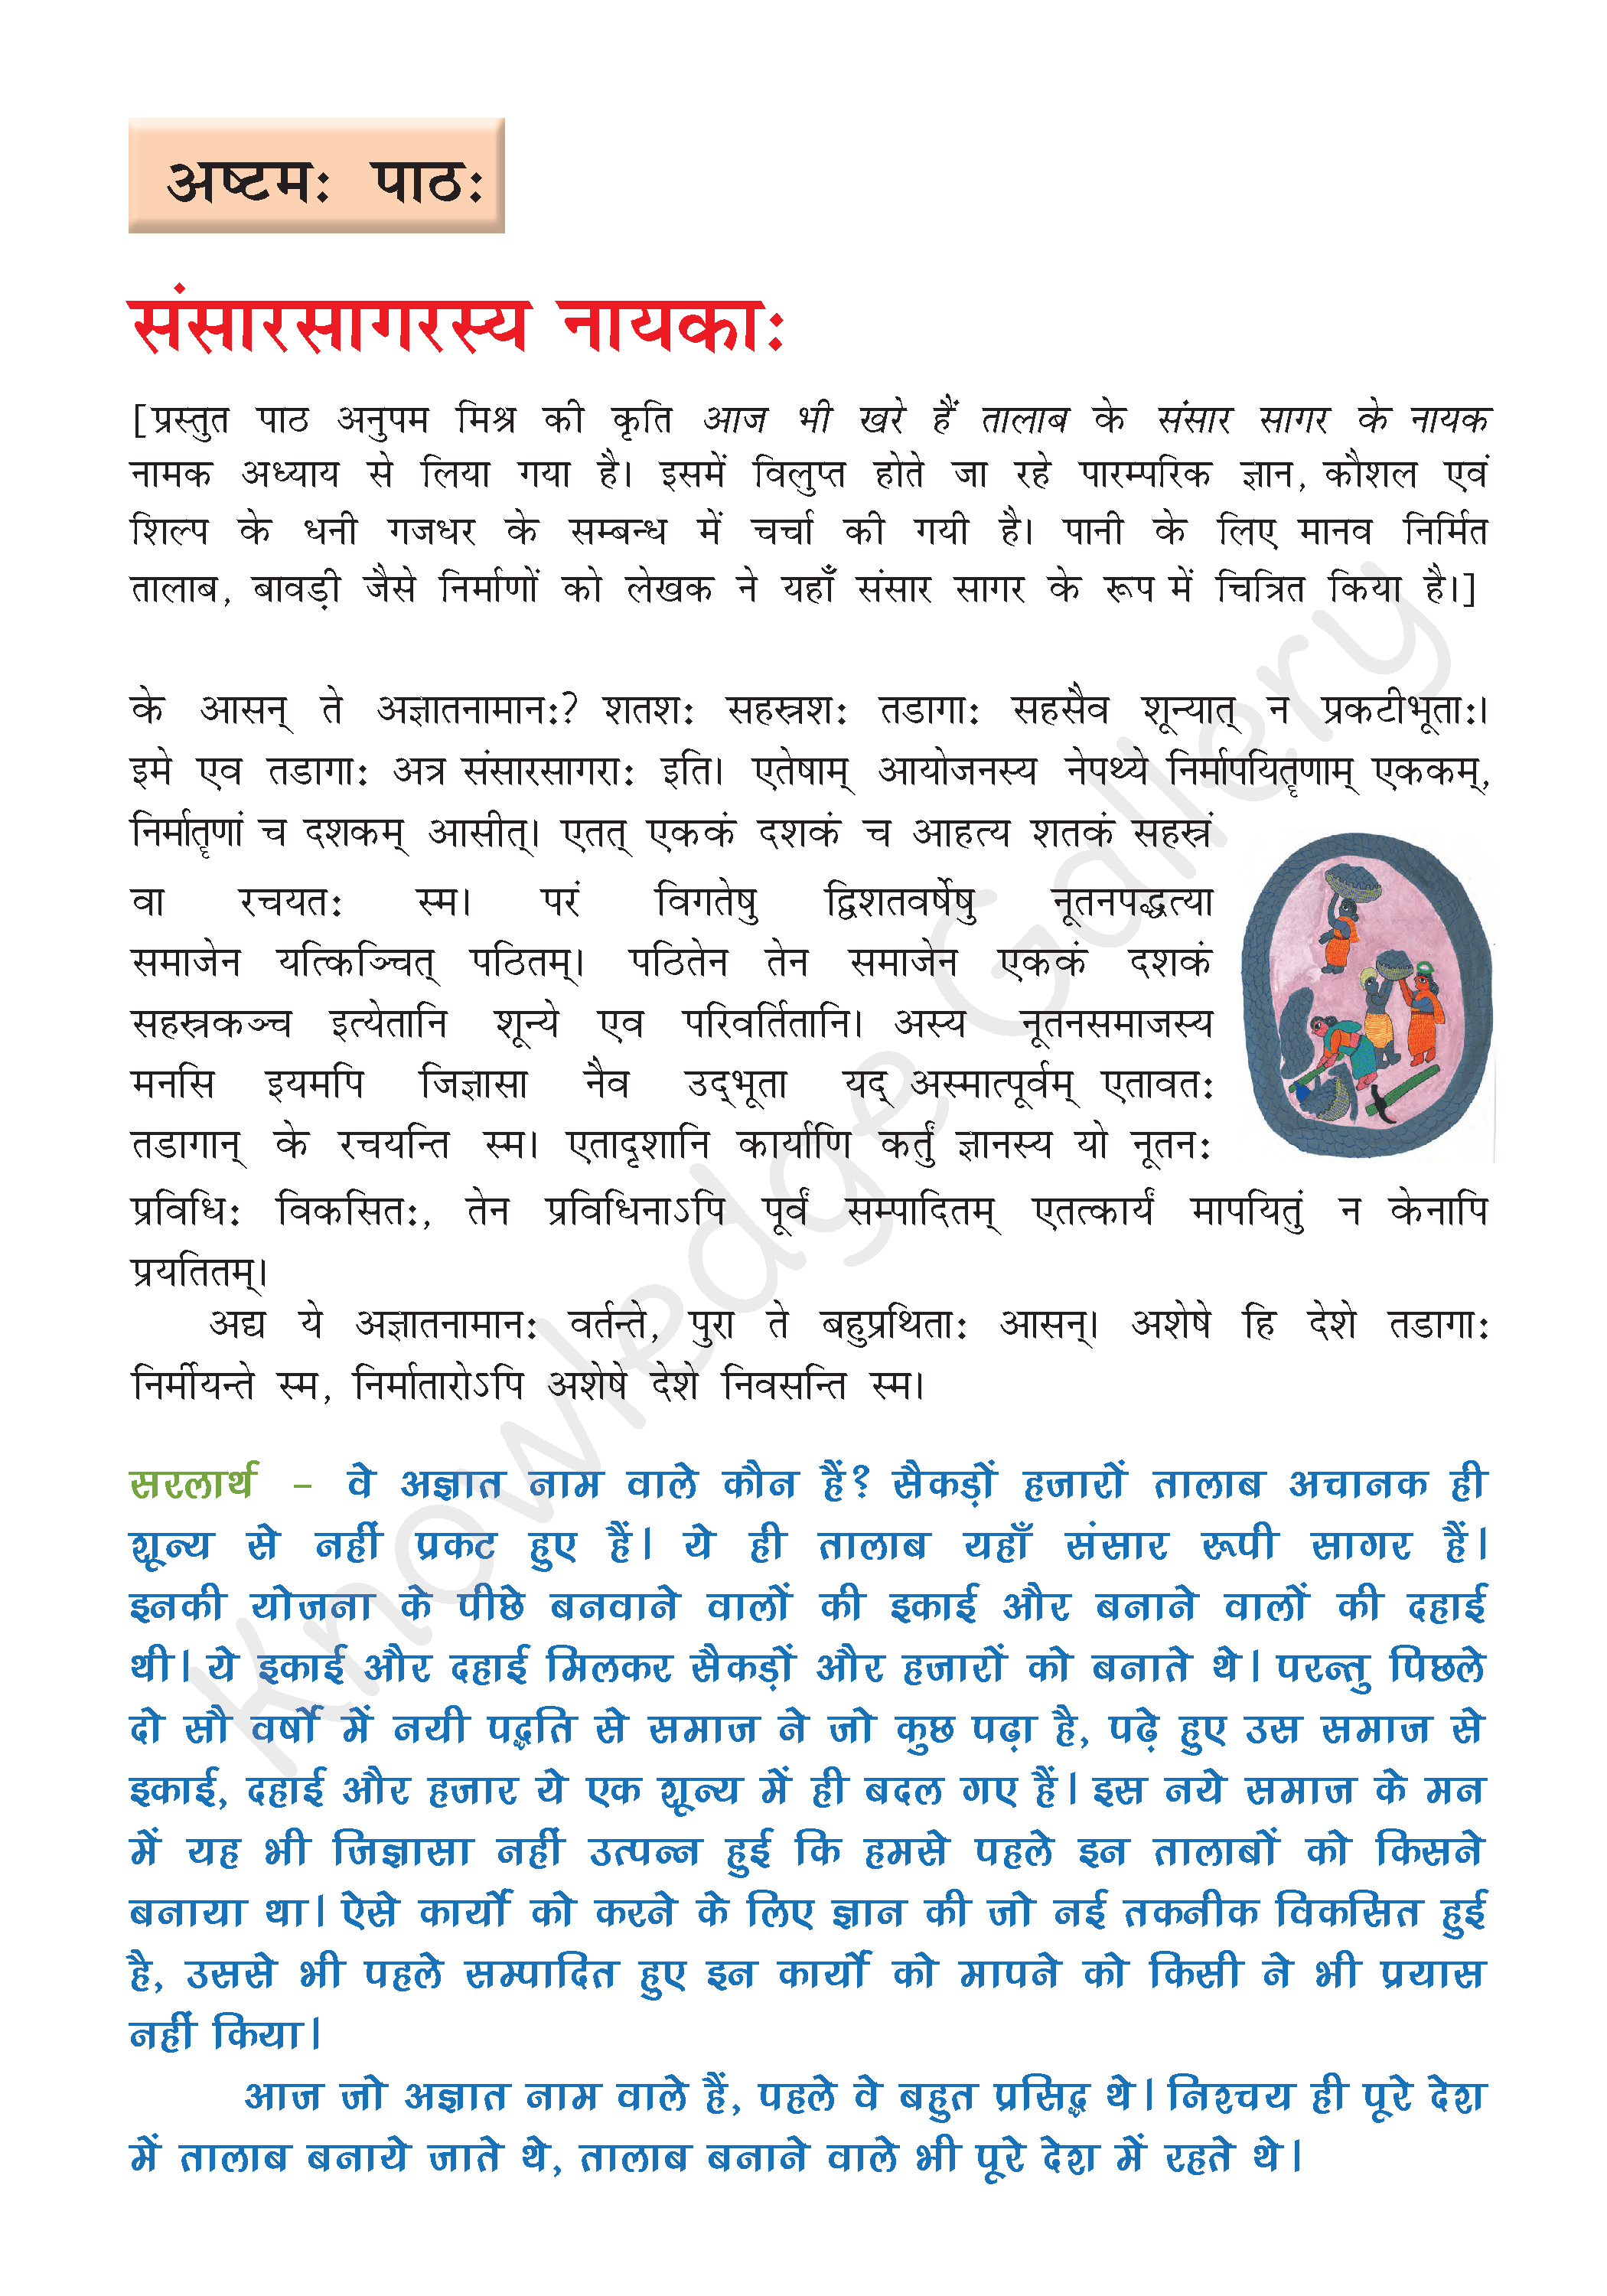 NCERT Solution For Class 8 Sanskrit Chapter 8 part 1